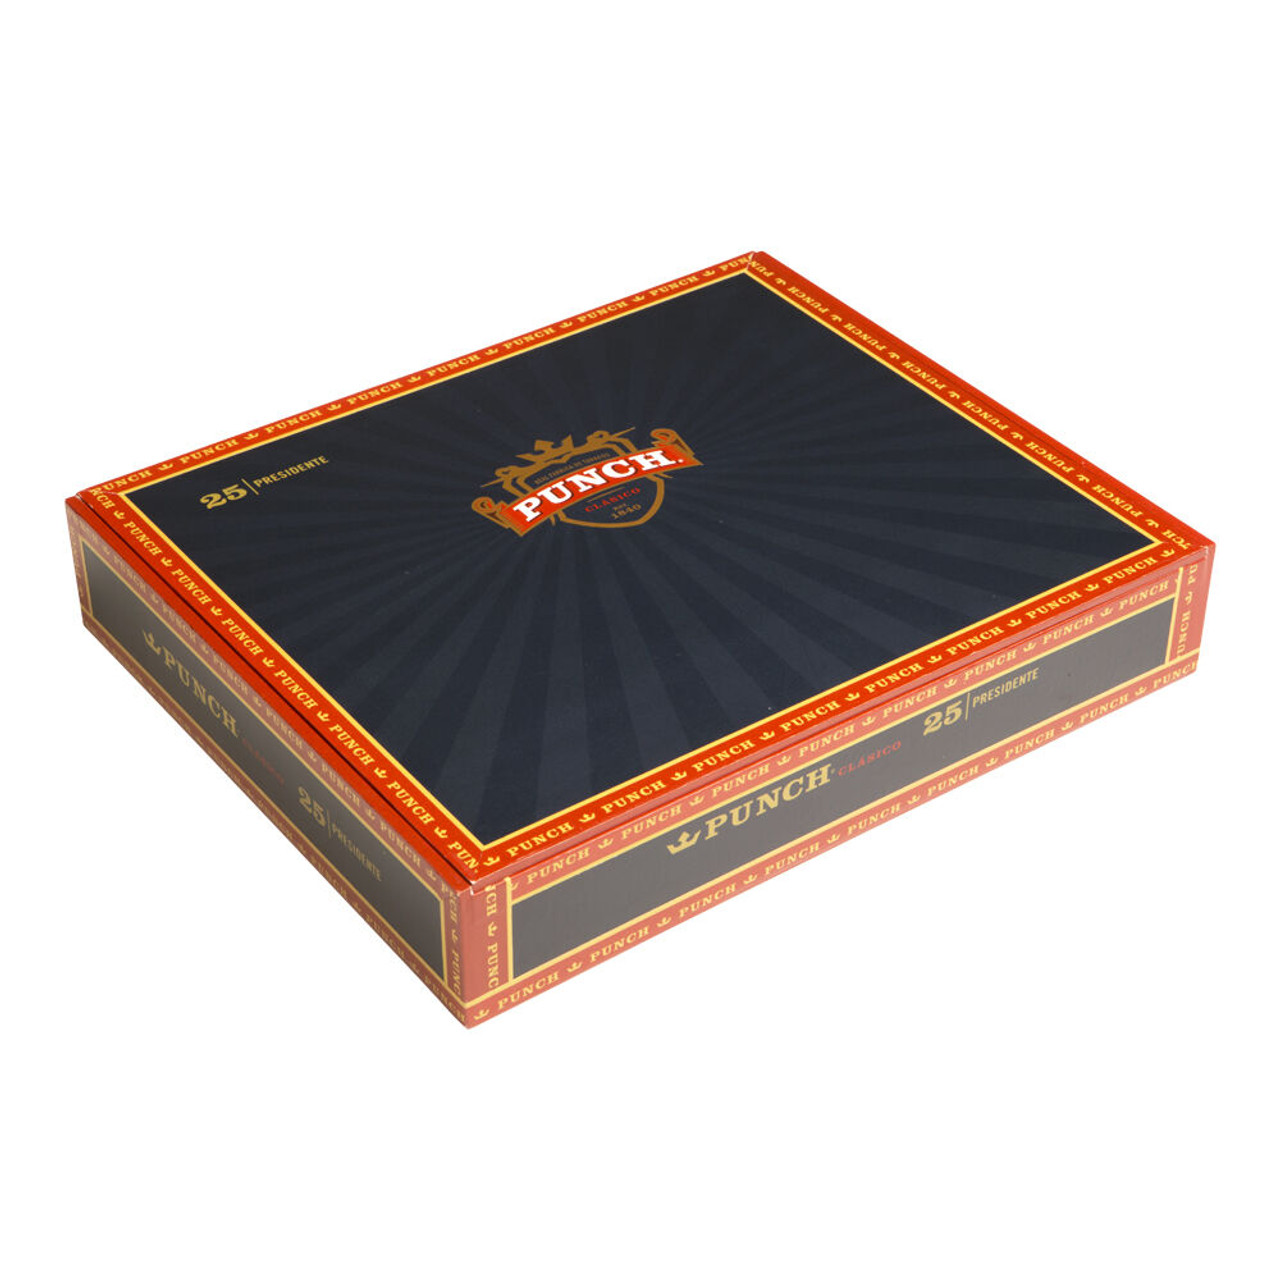 Punch Presidente Maduro Cigars - 8.5 x 52 (Box of 25) *Box